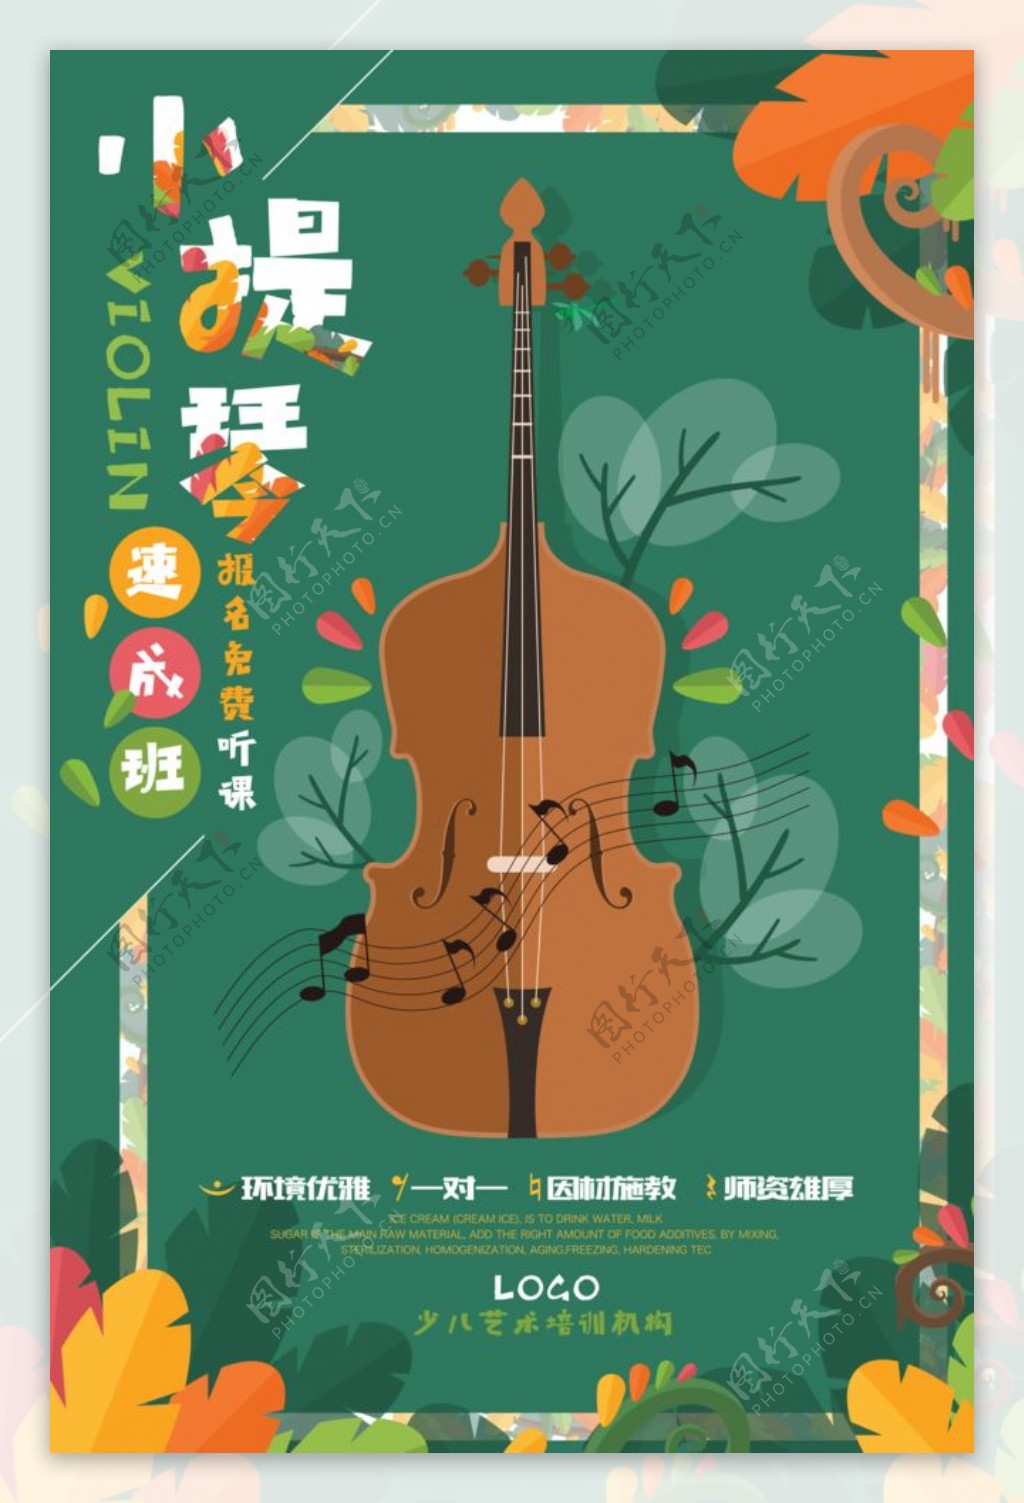 绿色少儿小提琴艺术班招生海报